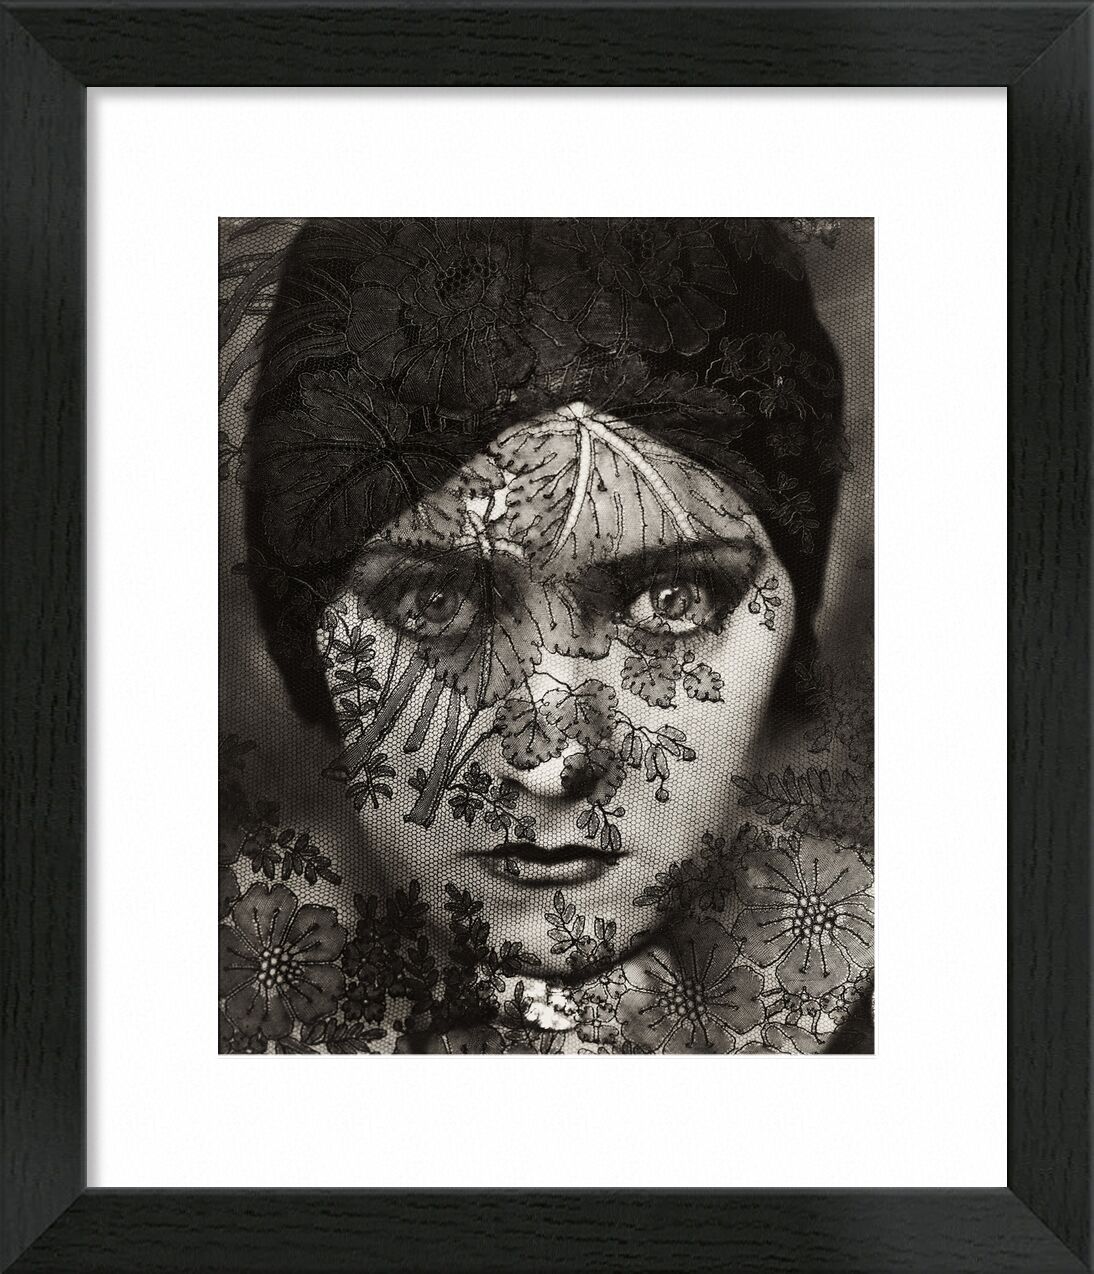 Iconic portraiture - Edward Steichen desde Bellas artes, Prodi Art, Steichen, Moda, velo, mujer, blanco y negro, retrato